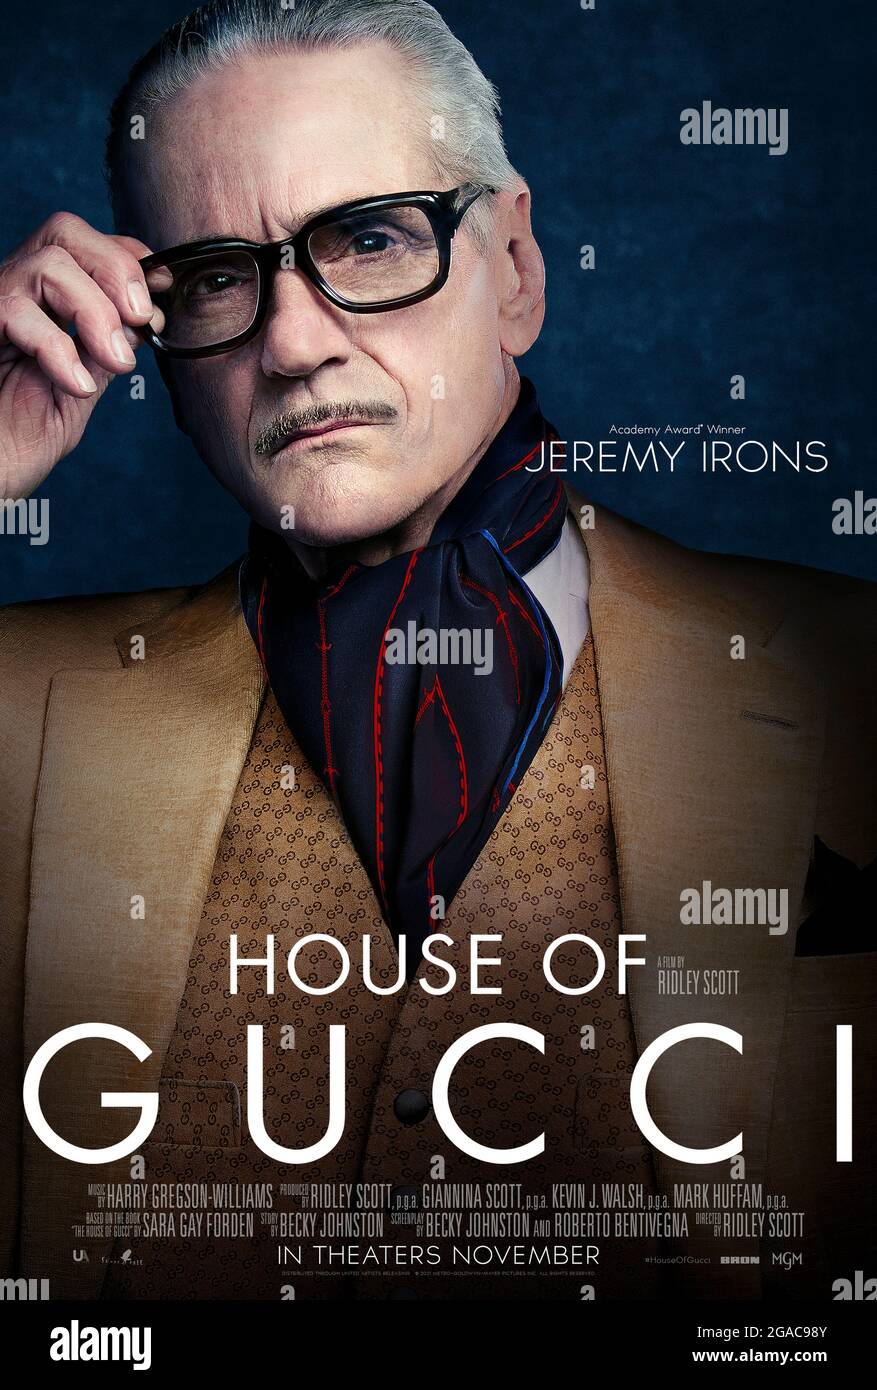 House of Gucci (2021) diretto da Ridley Scott e interpretato da Jeremy Irons come Rodolfo Gucci in un dramma criminale ispirato all'impero di famiglia dietro la famosa casa di moda italiana. Foto Stock